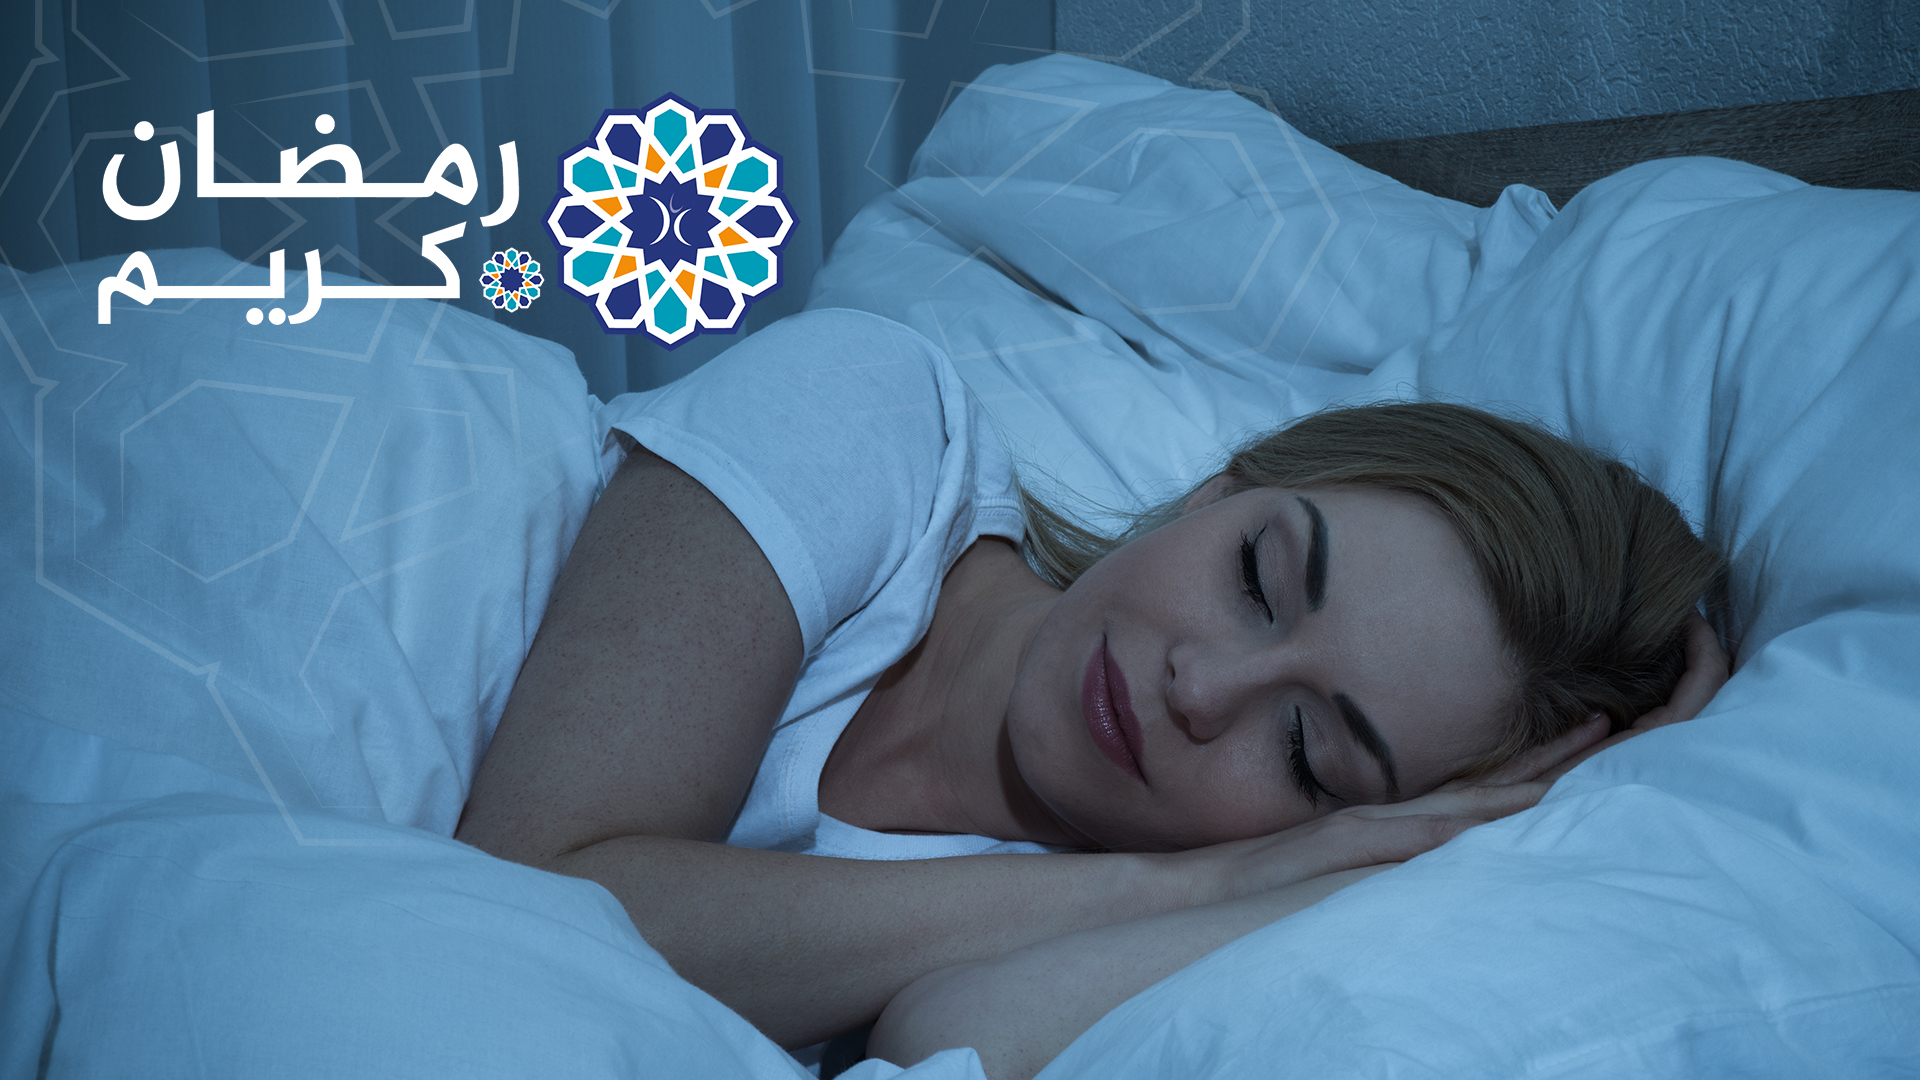 InfoSanté - Hygiène de vie durant le ramadan : Le sommeil, un allié santé